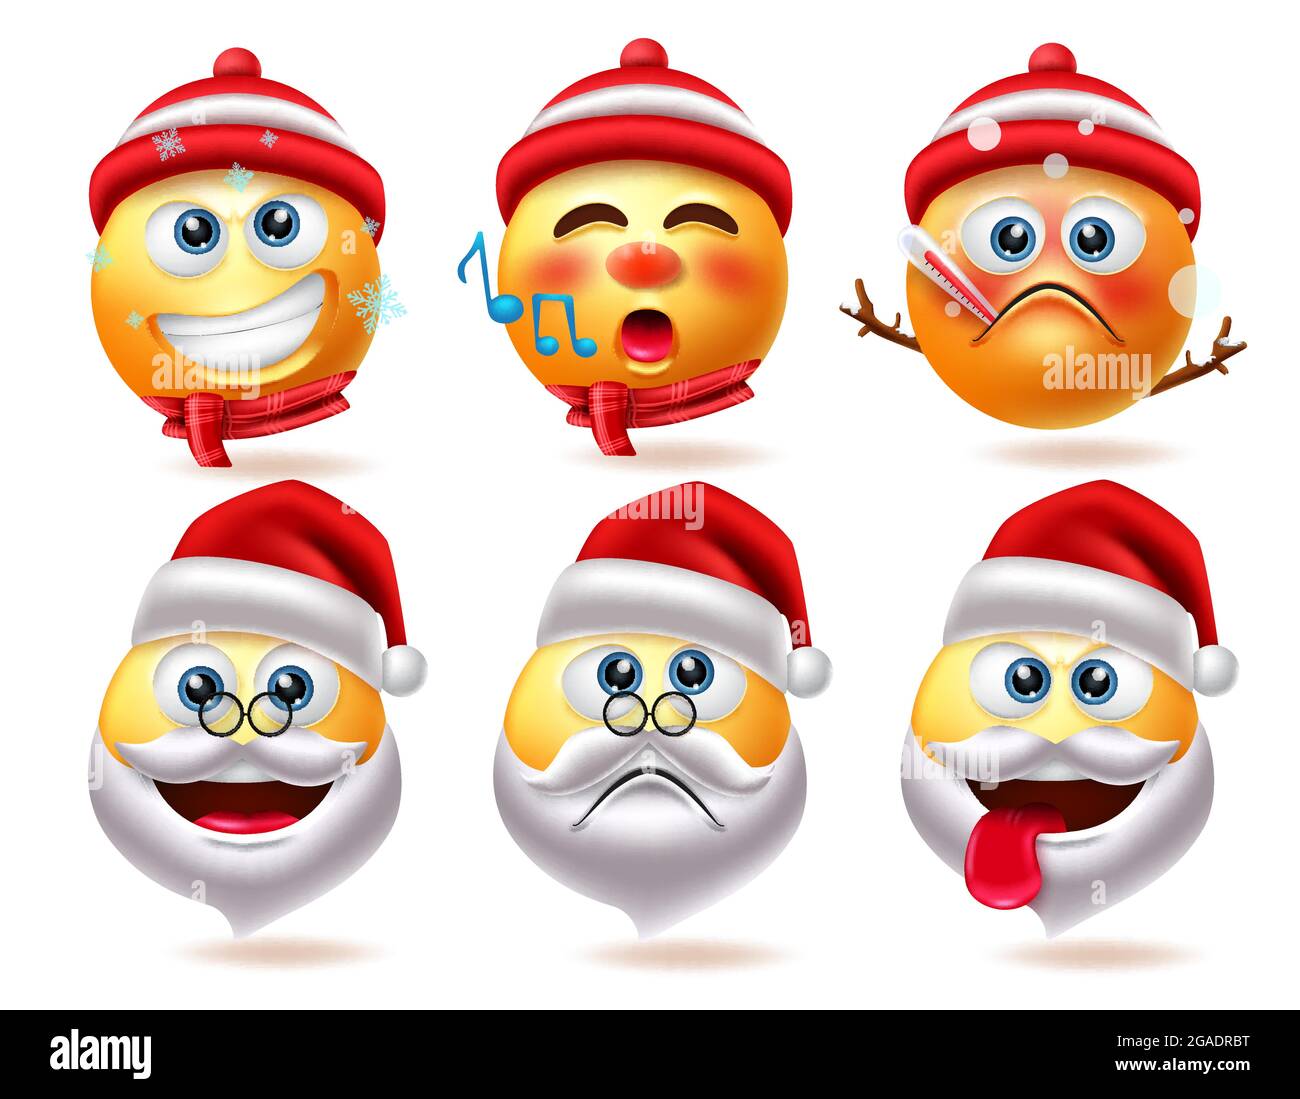 Weihnachten Smiley Zeichen Vektor-Set. Schneemann und santa claus 3d Emoji  Charakter in krank, singen, traurig und frech Mimik für süße Weihnachten  Stock-Vektorgrafik - Alamy